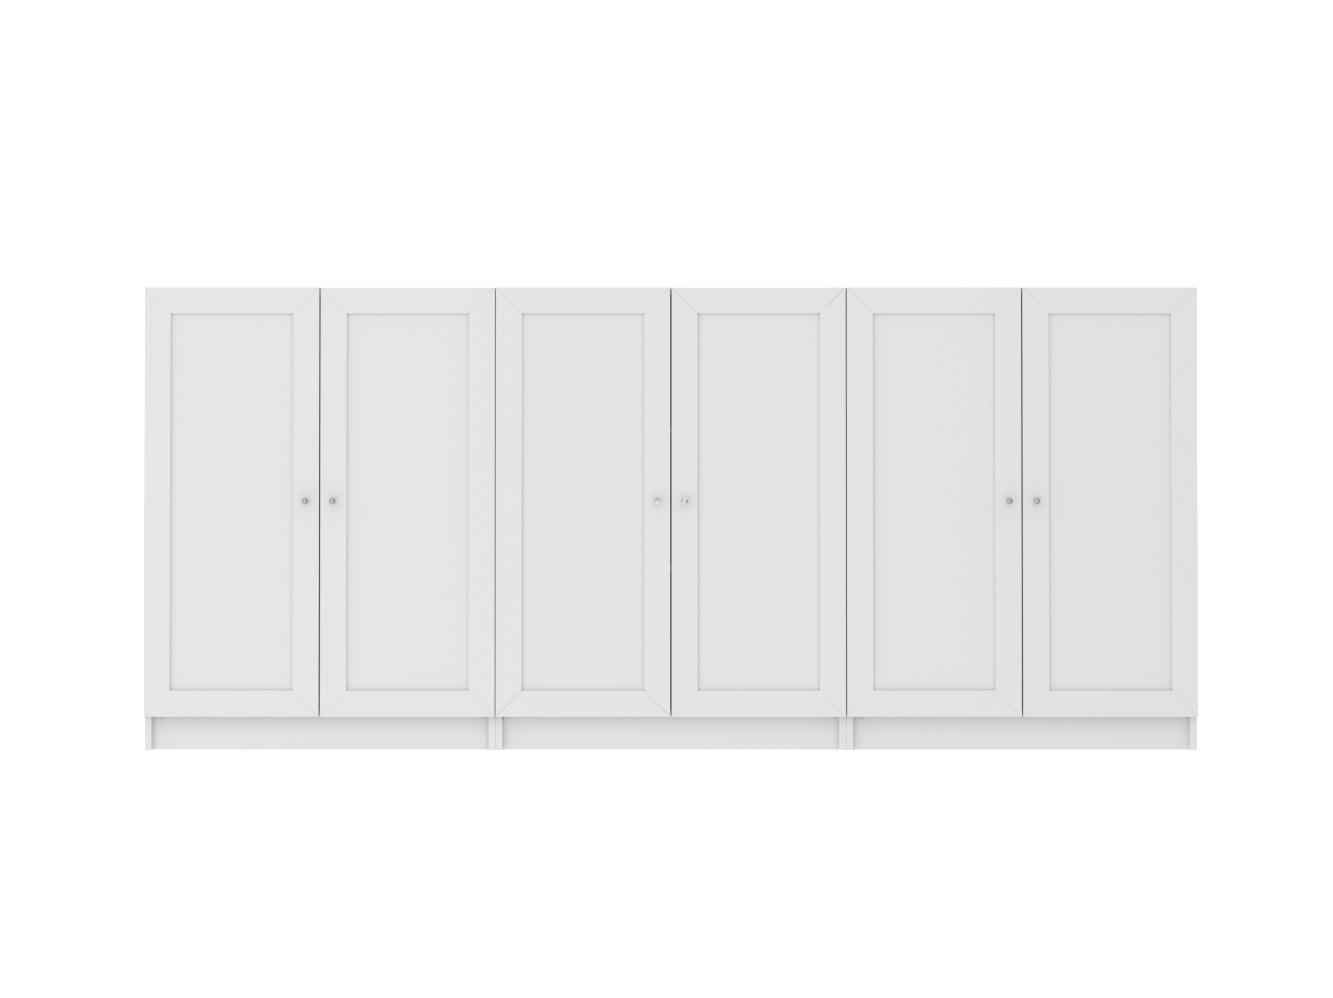  Комод Билли 215 white ИКЕА (IKEA) изображение товара